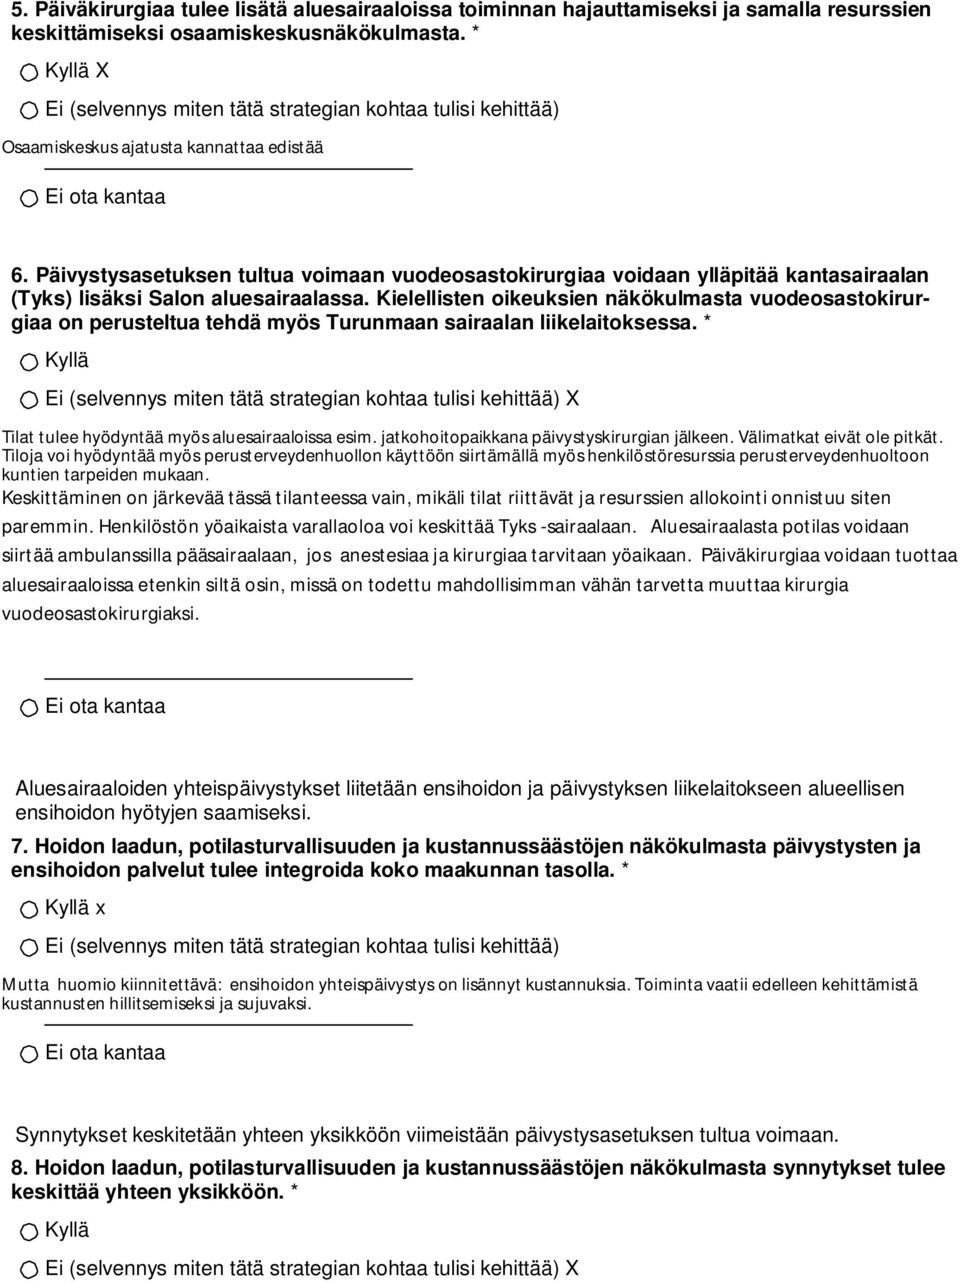 Kielellisten oikeuksien näkökulmasta vuodeosastokirurgiaa on perusteltua tehdä myös Turunmaan sairaalan liikelaitoksessa. * X Tilat tulee hyödyntää myös aluesairaaloissa esim.